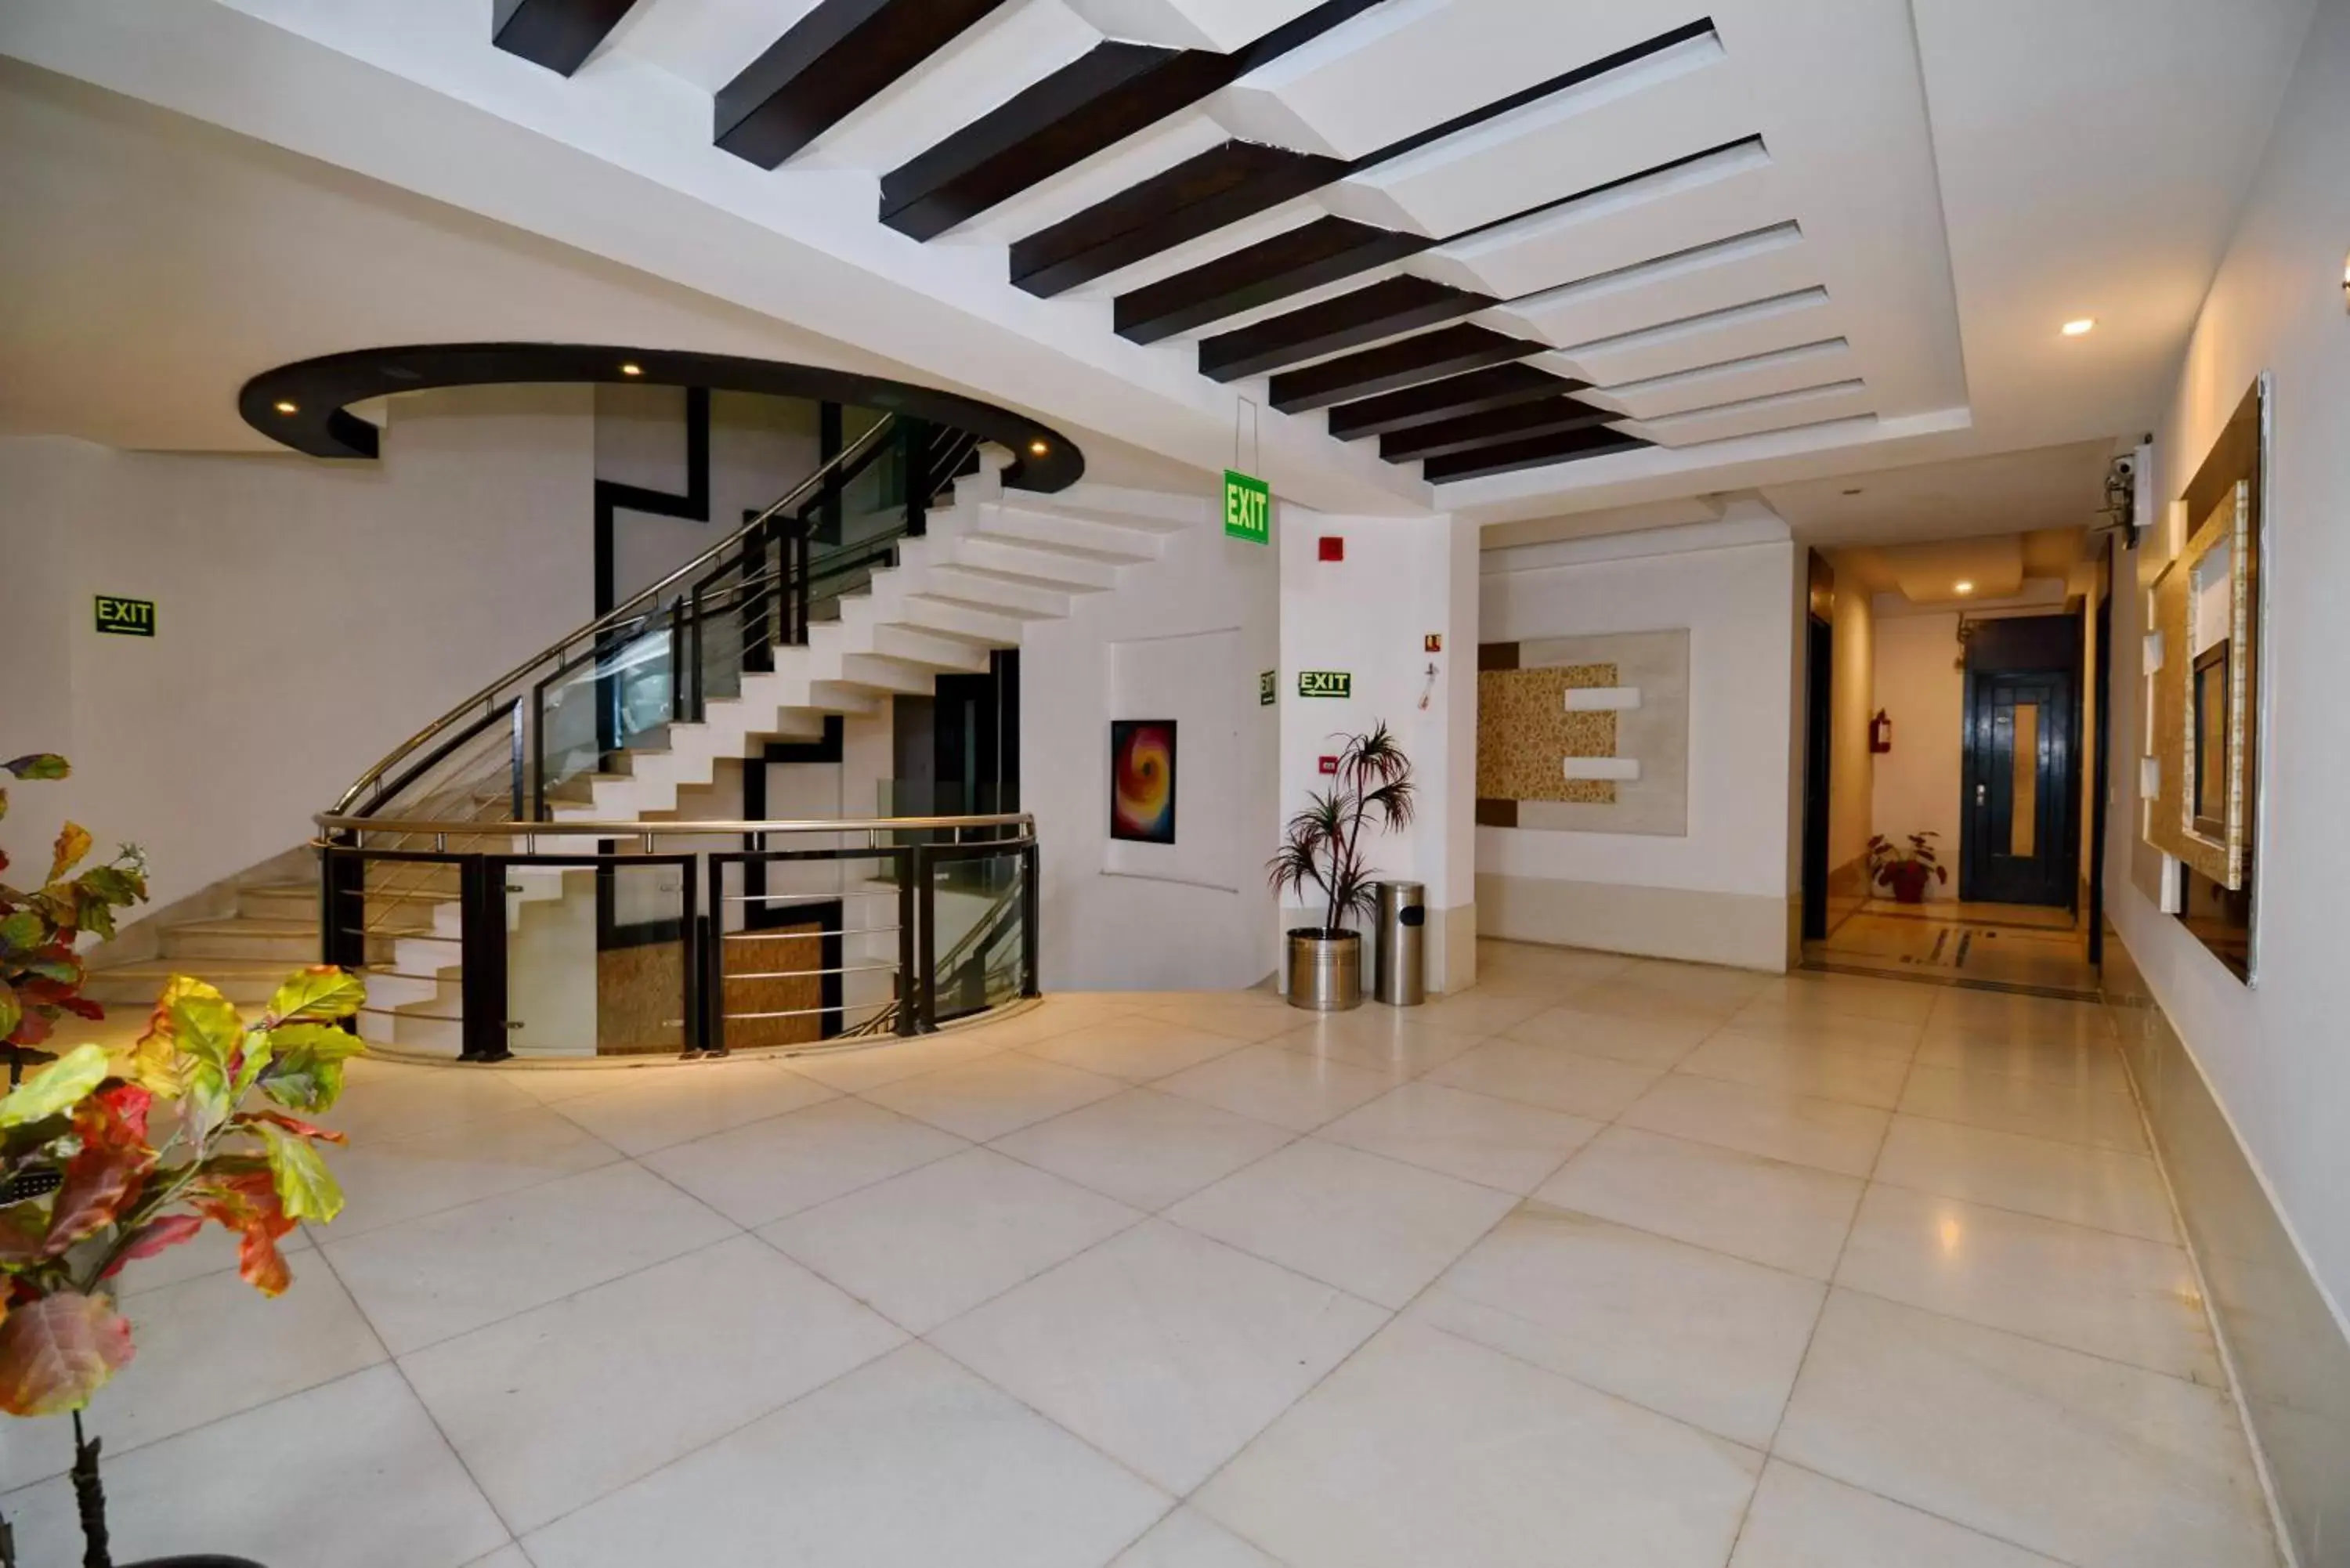 Lobby or reception, Lobby/Reception in Hotel Krishna - By RCG Hotels